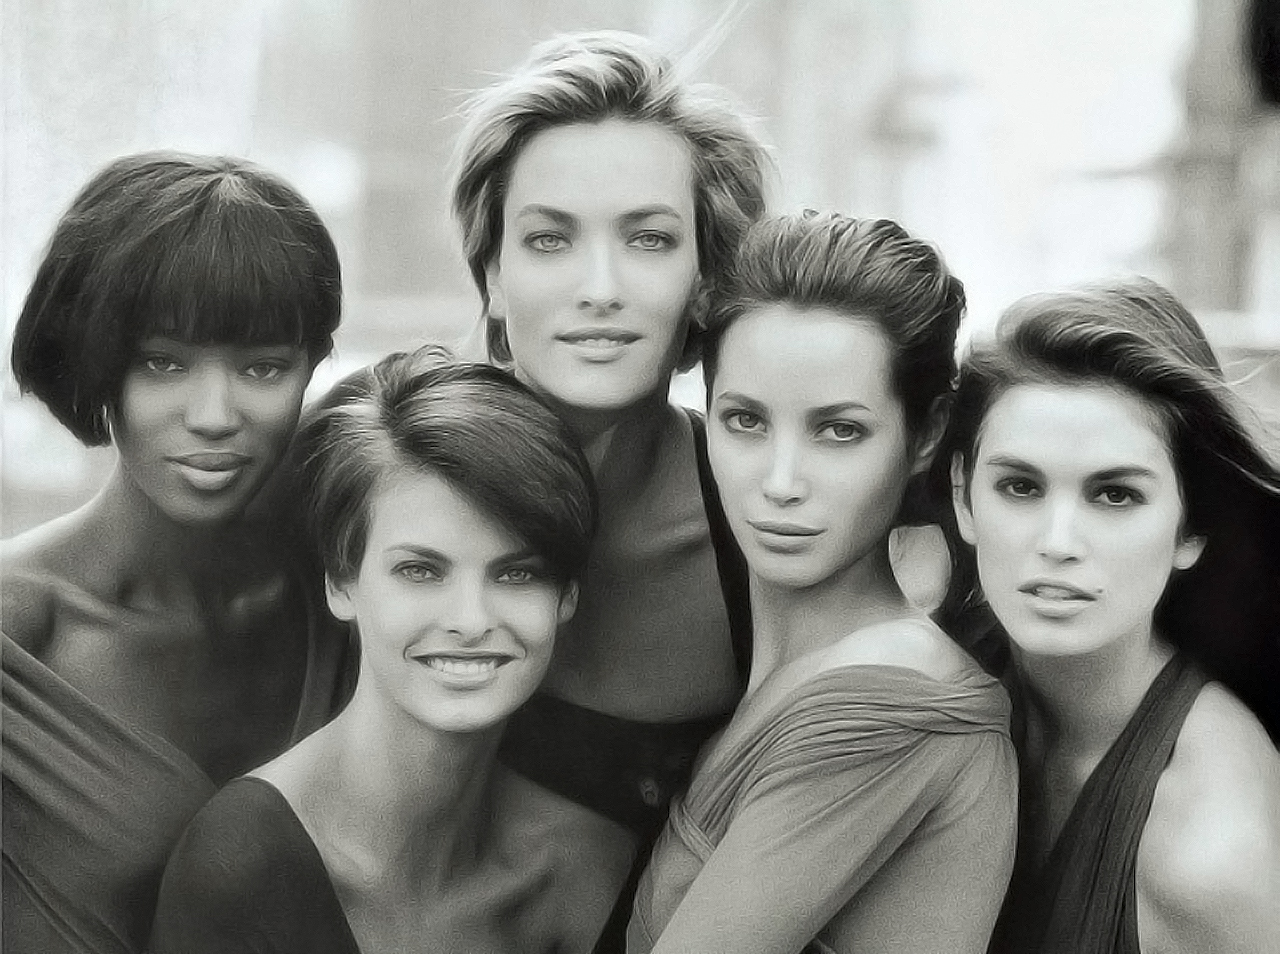 Vogue-ს 10 გარეკანი, რომლებმაც მოდის ისტორია შეცვალეს